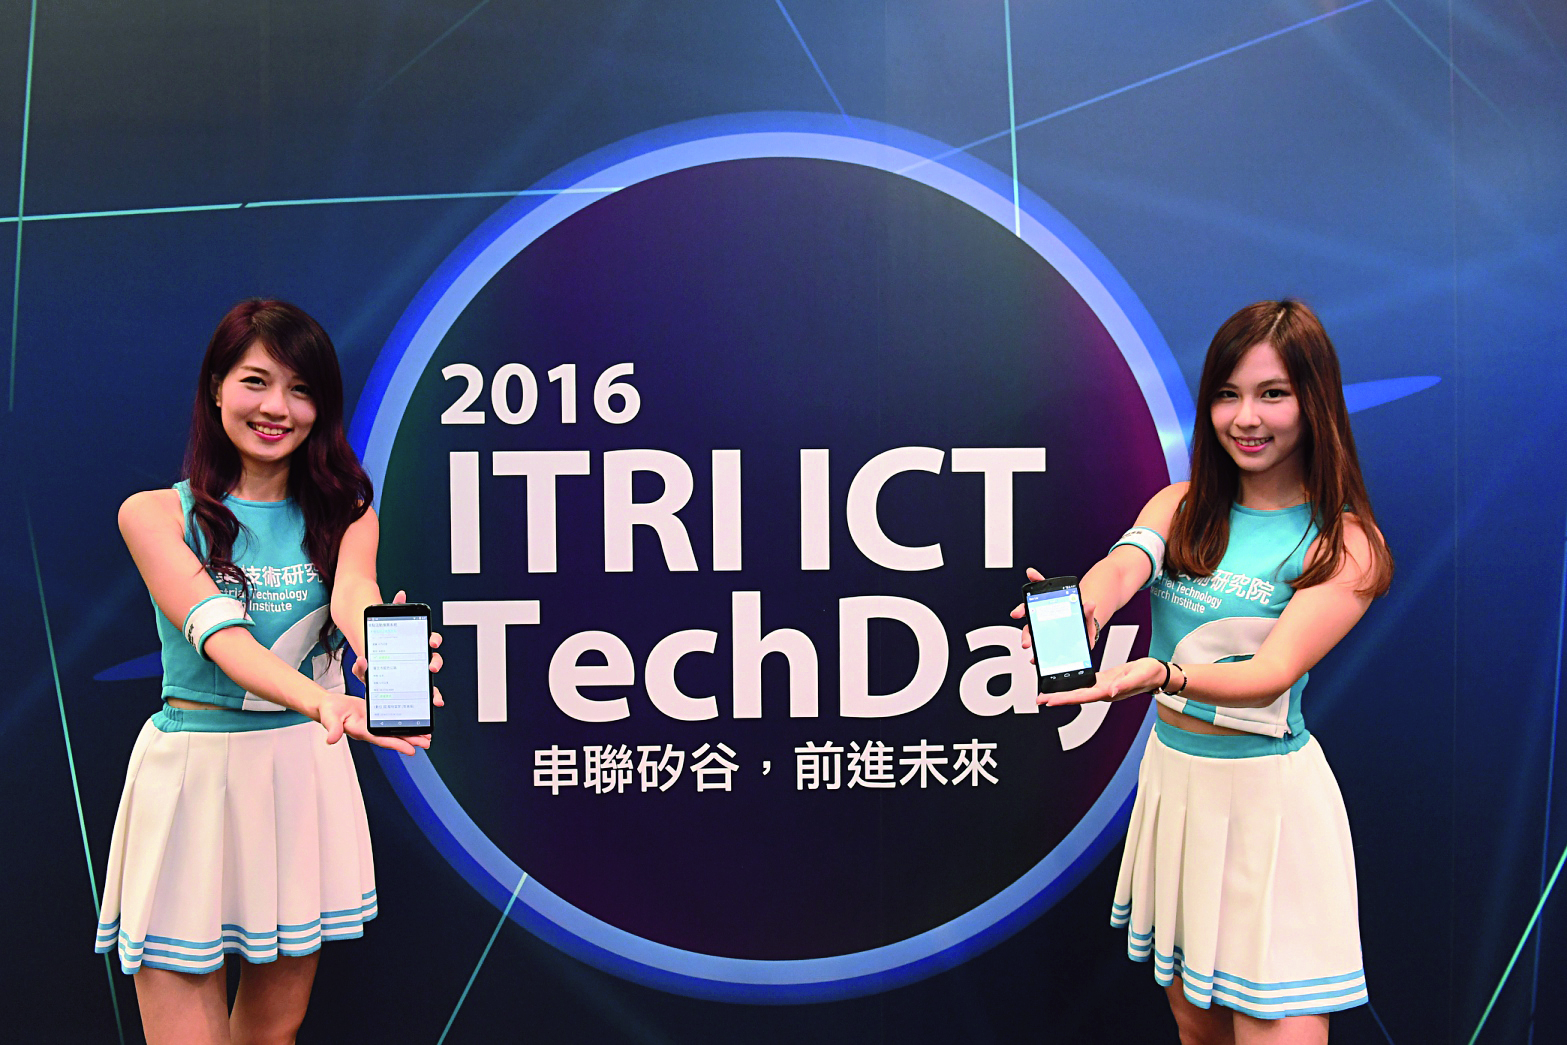 工研院首次舉辦「2016 ITRI ICT Tech Day」，期待在多方交流之下，能激盪出臺灣ICT產業的新發展領域。